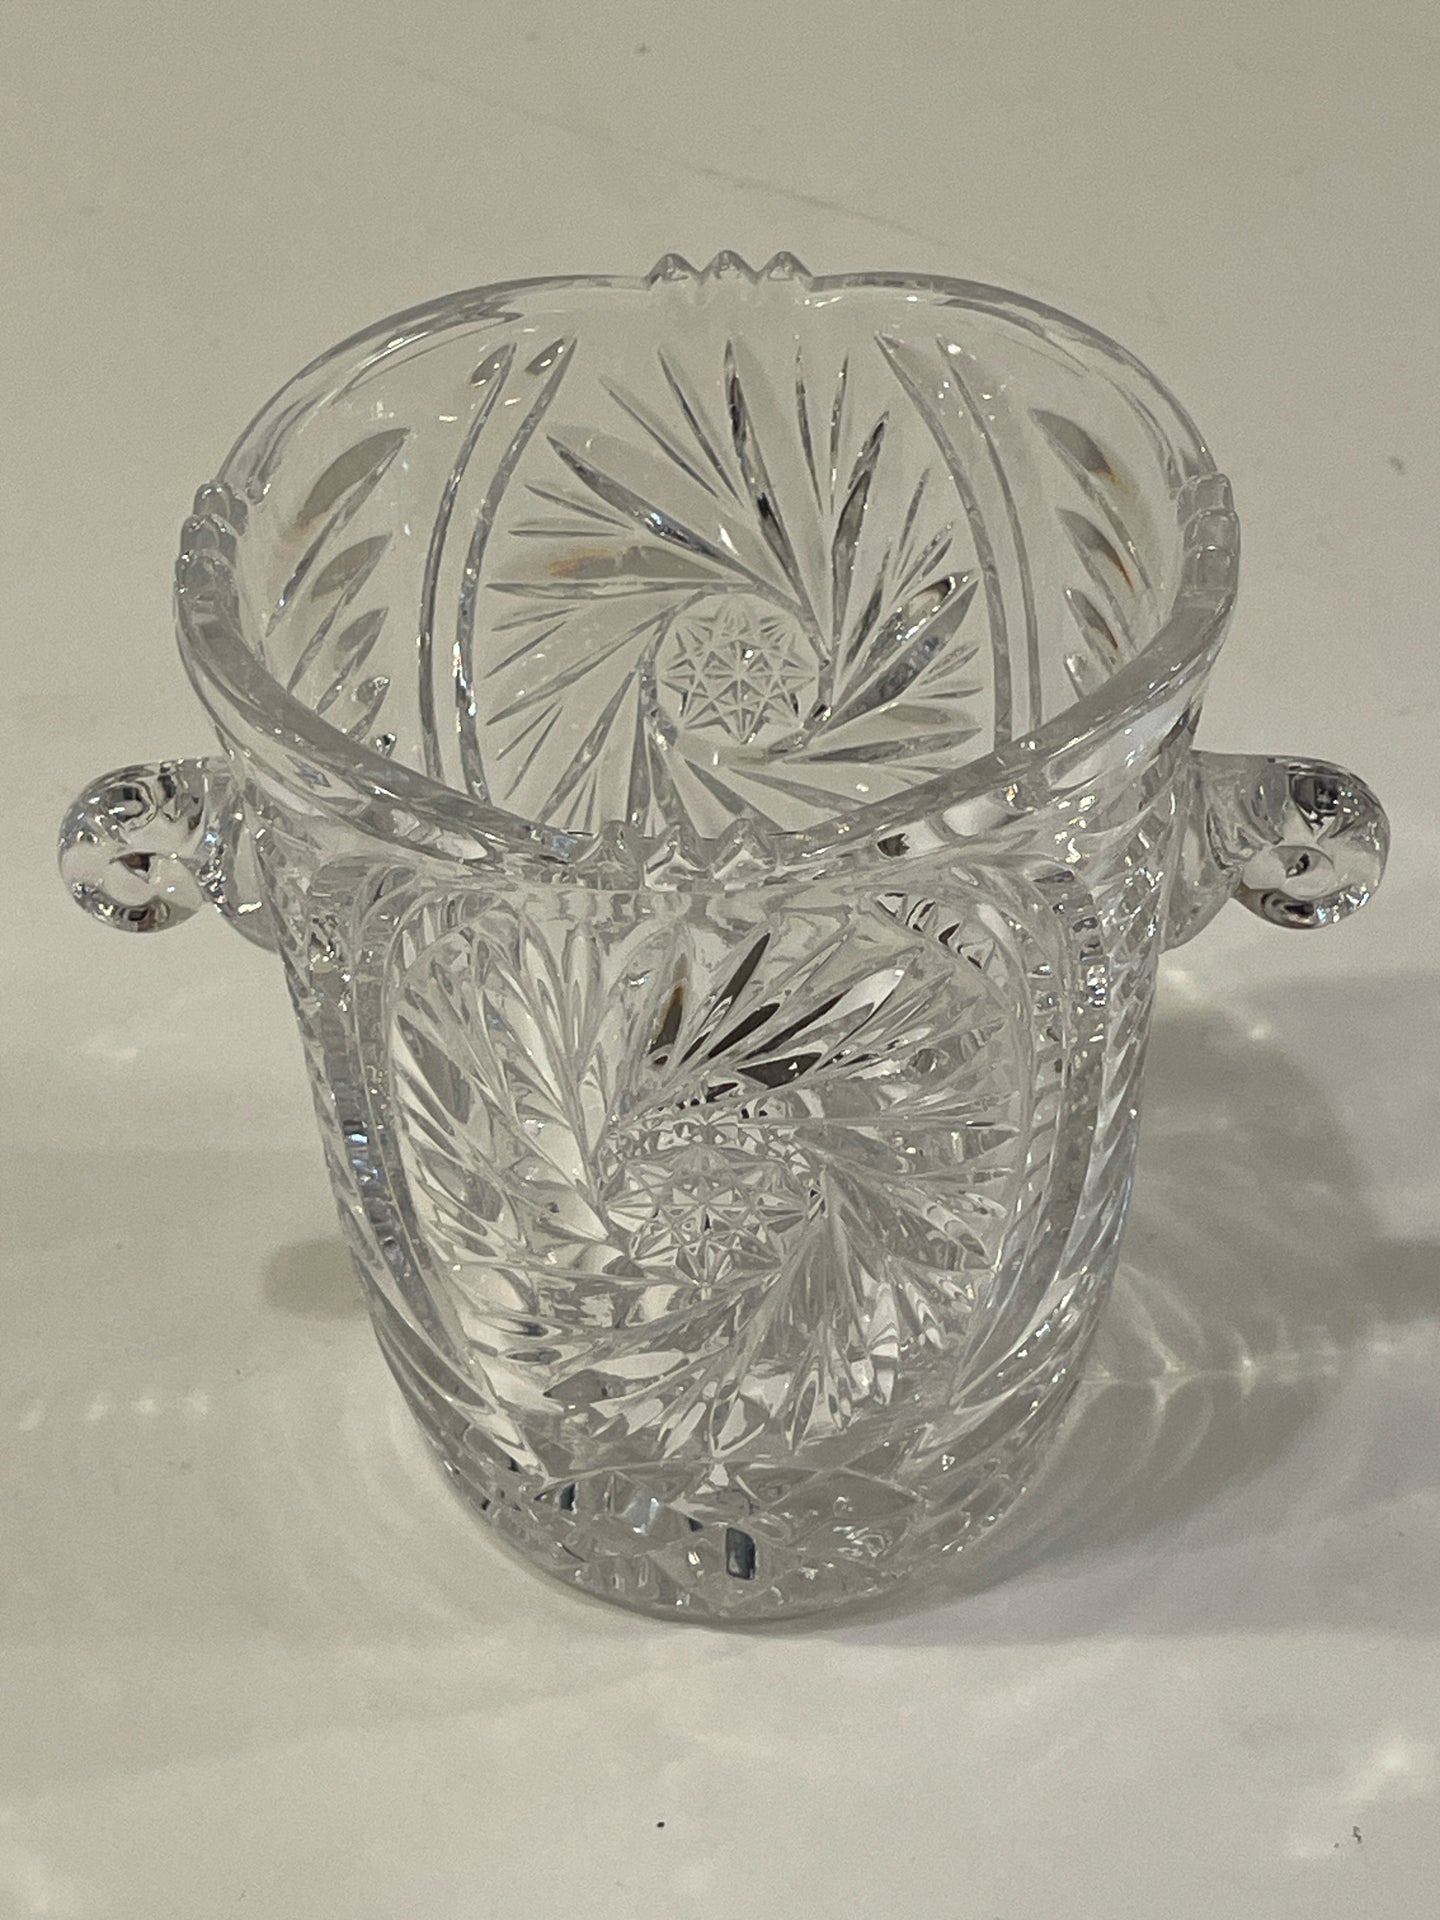 Crystal Ice Bucket